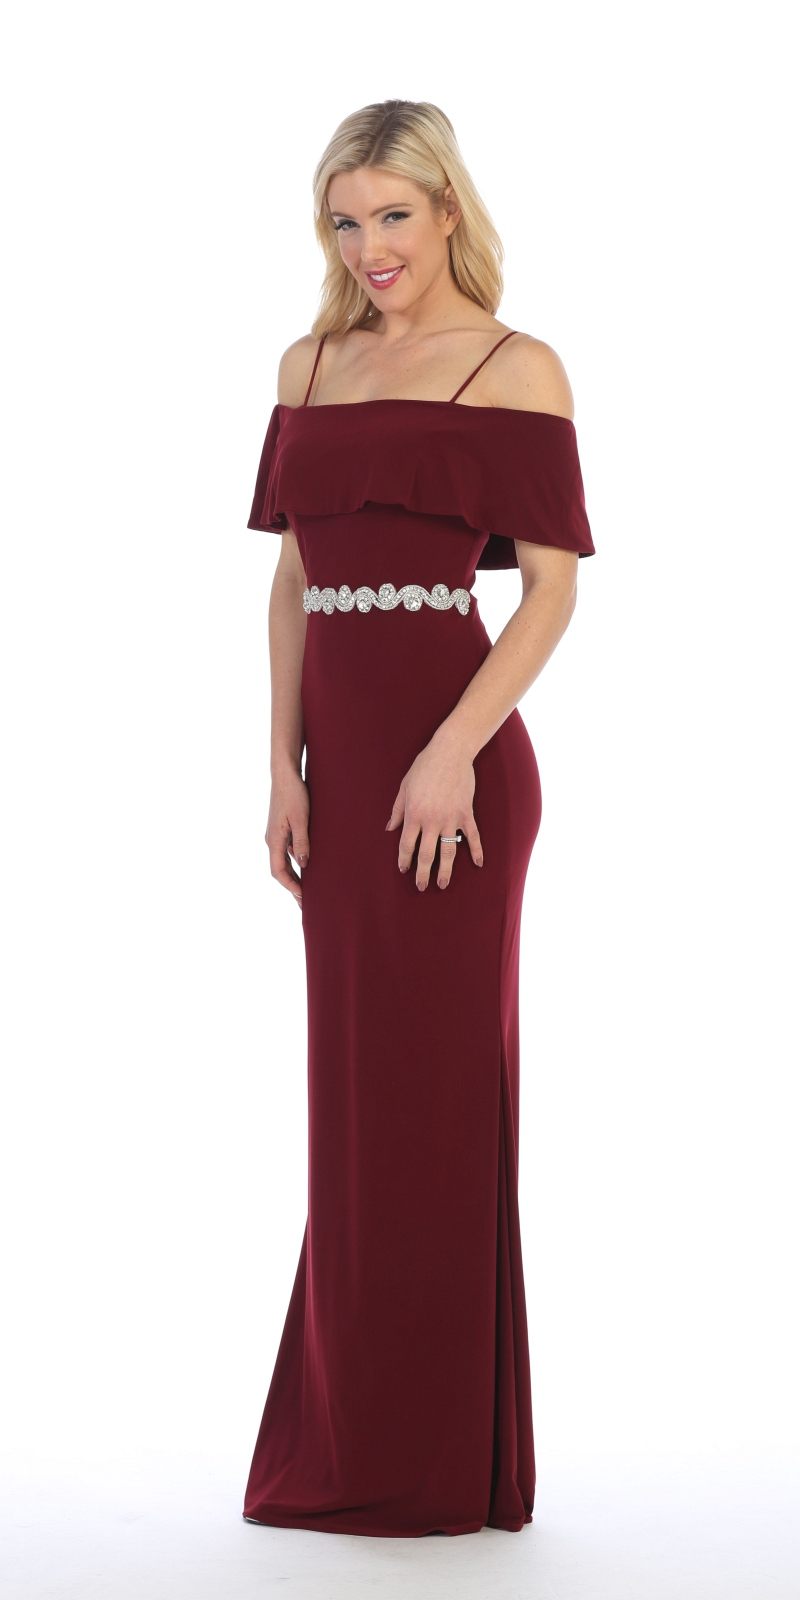 Celavie 6332 Burgundy Floor Length Evening Gown Off Shoulder